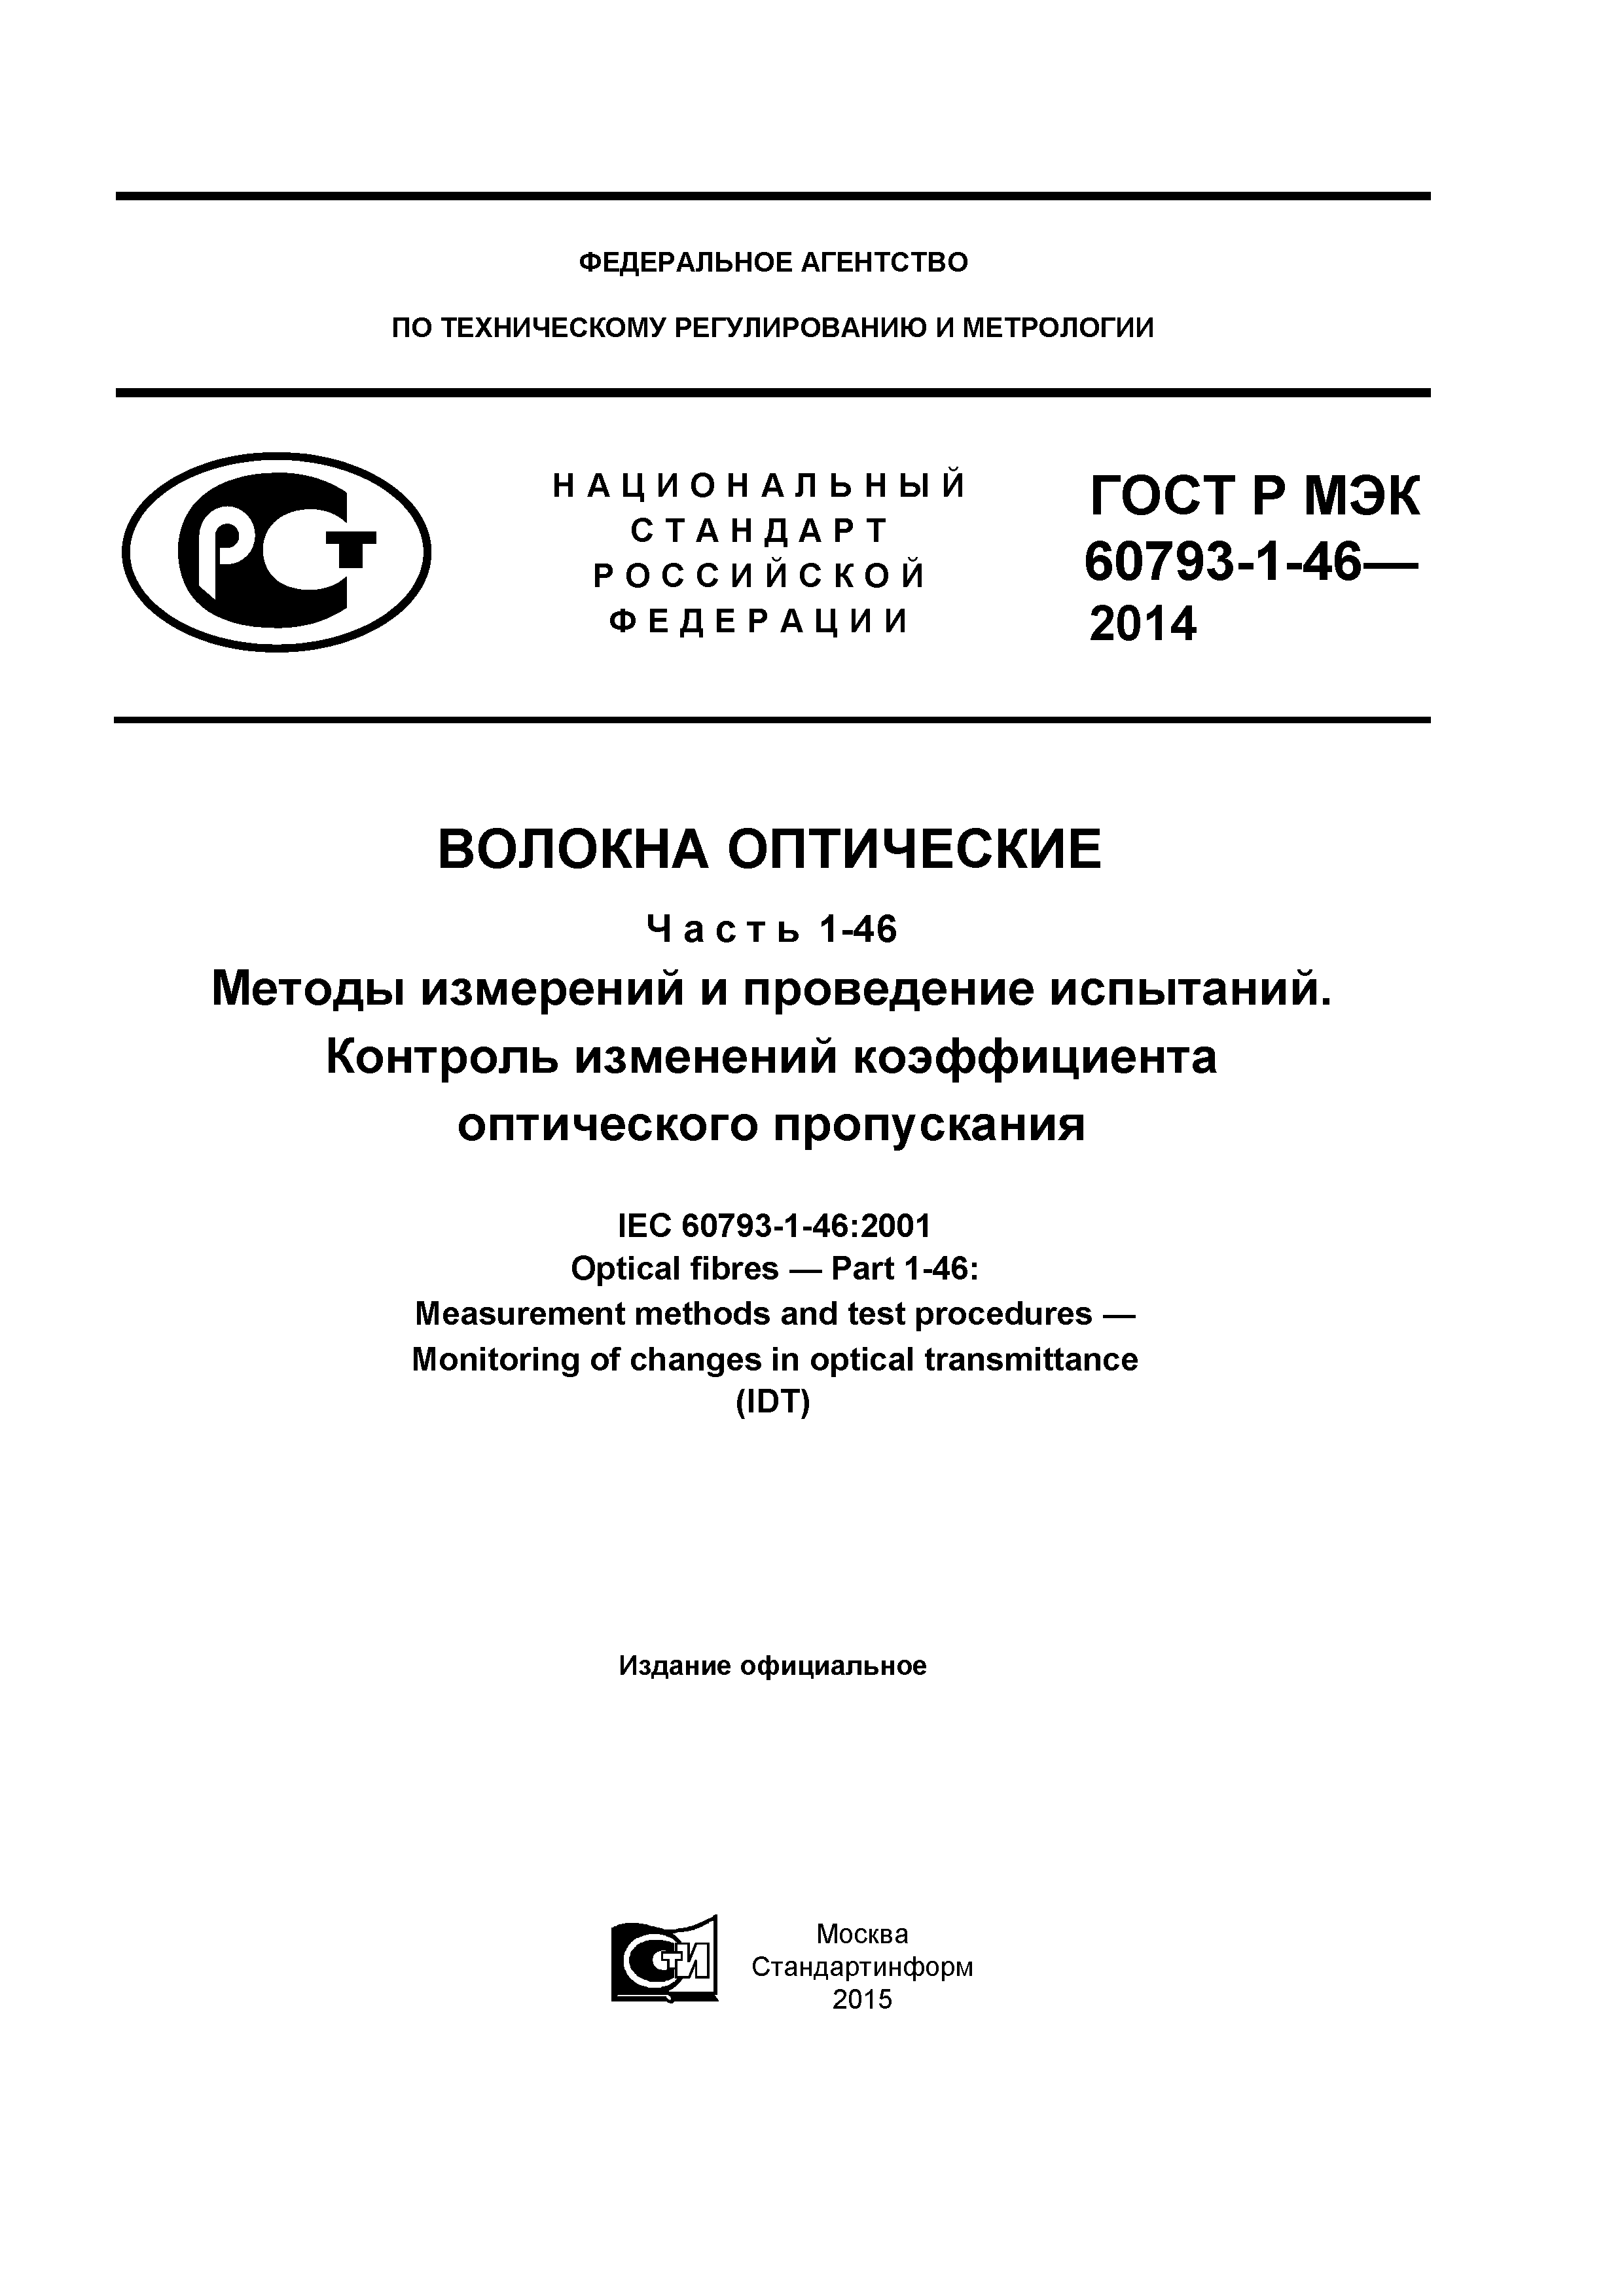 ГОСТ Р МЭК 60793-1-46-2014